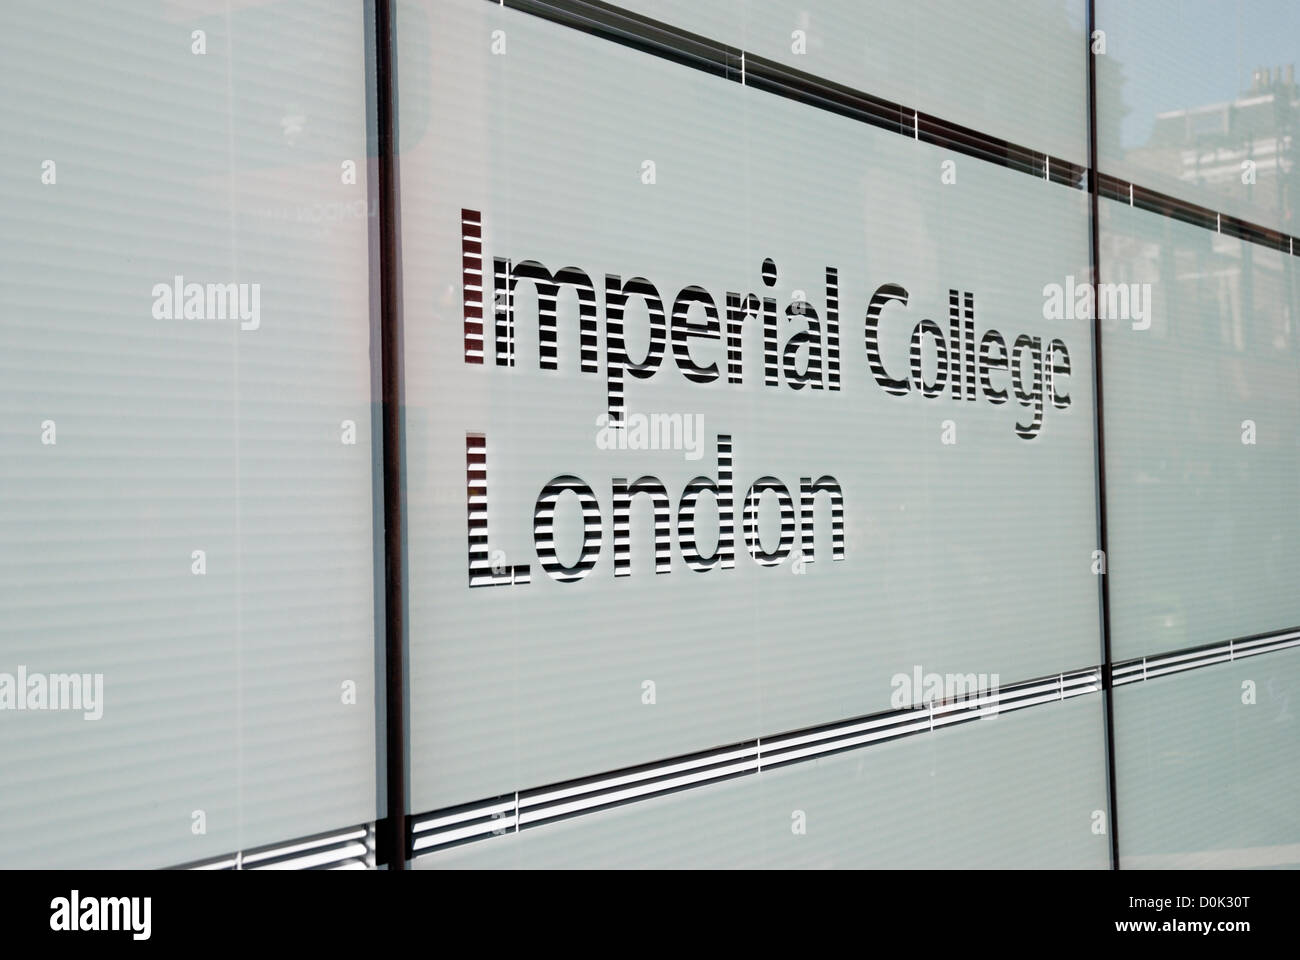 L'Imperial College de Londres Praed Street campus. Banque D'Images